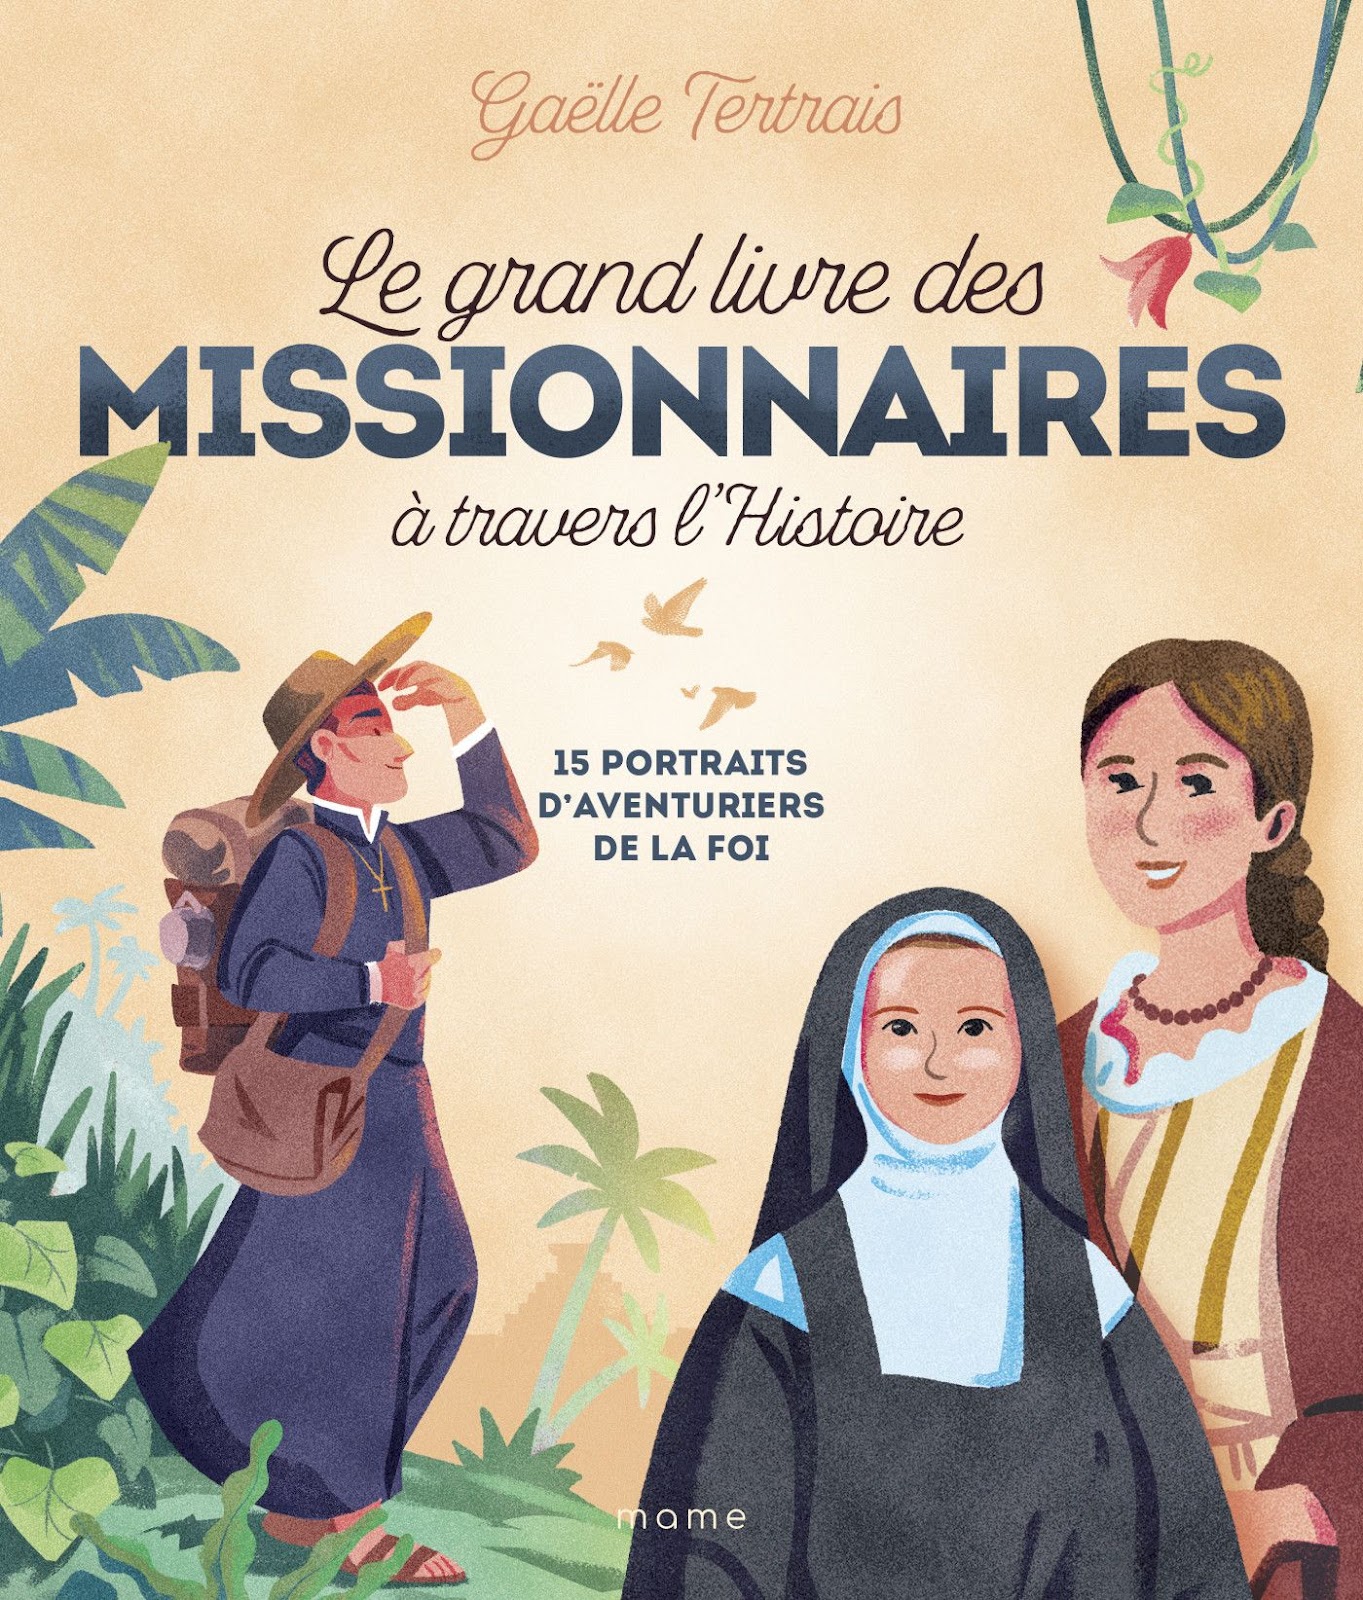 Le grand livre des missionnaires, quand la foi fait vivre de véritables aventures